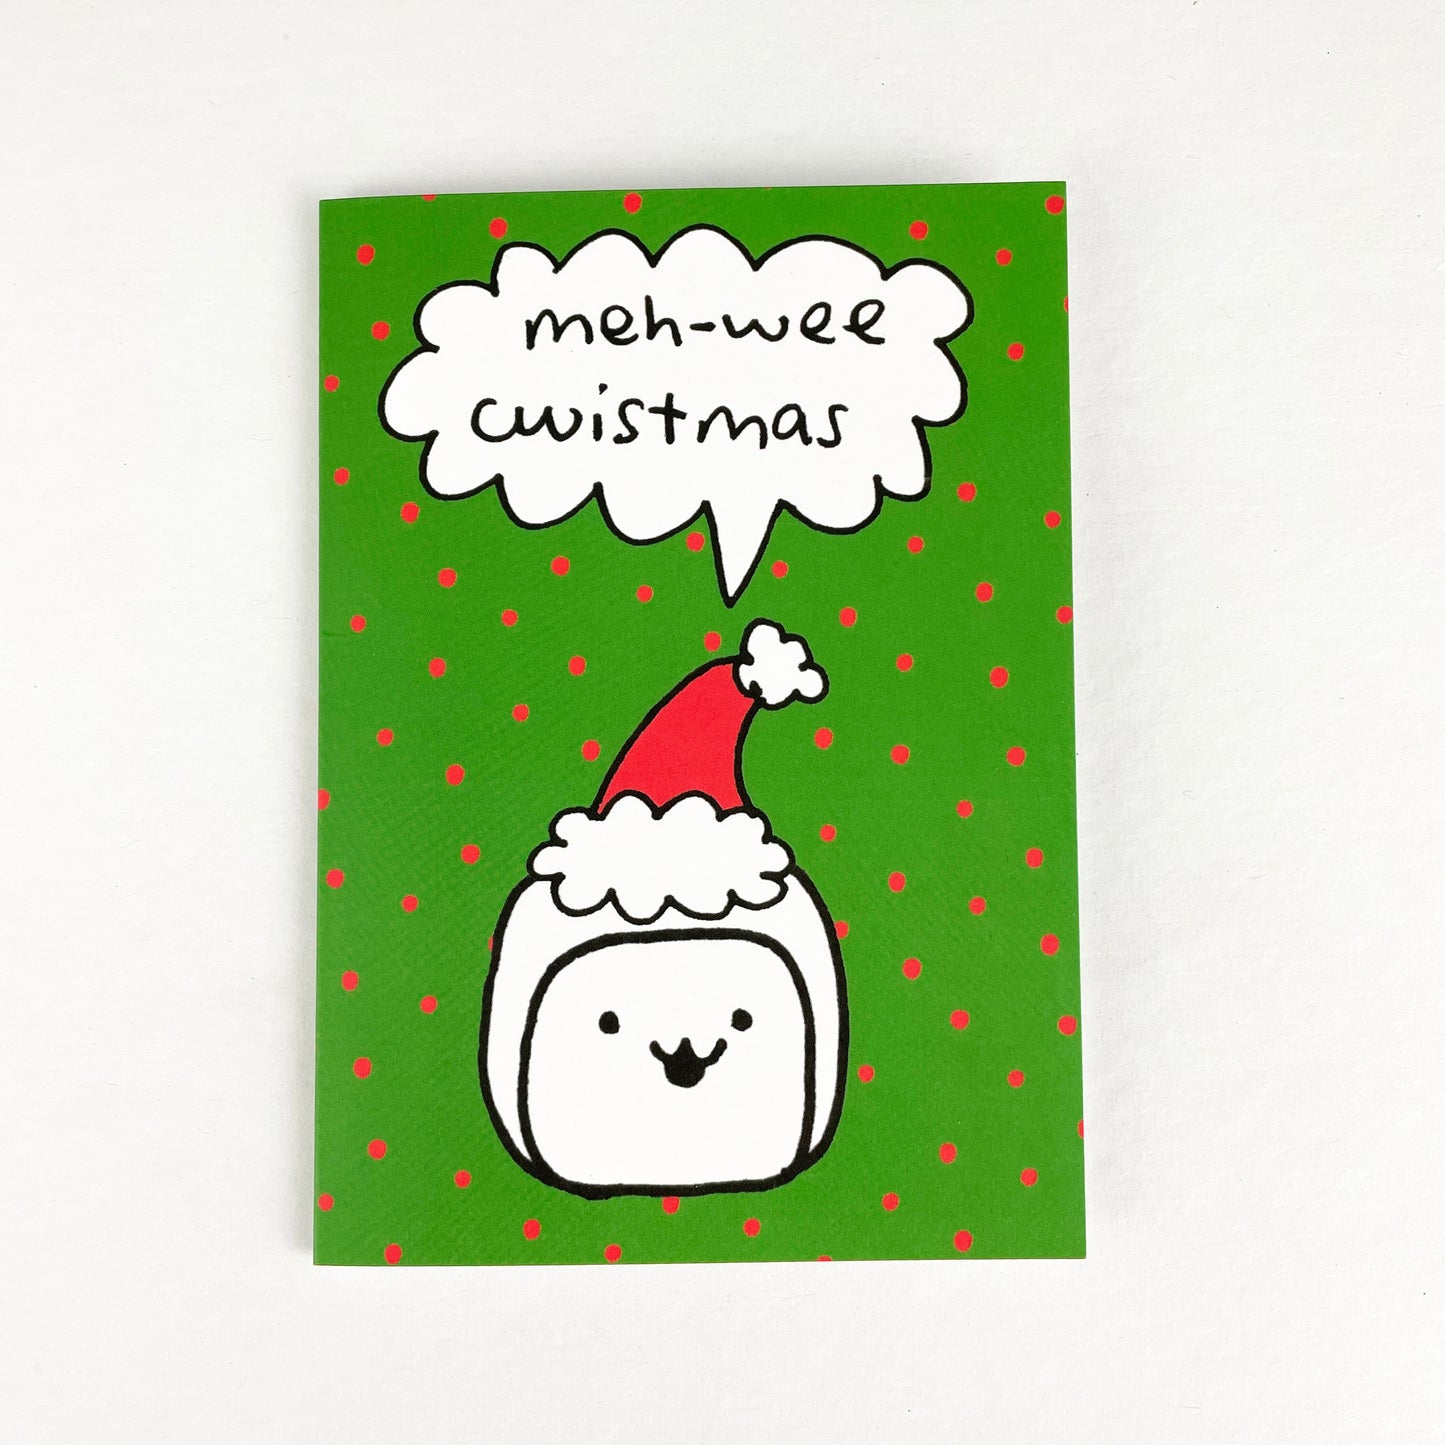 Tofu Baby Greeting Cards by Missy Kulik - "meh-wee cwistmas!" by Missy Kulik - K. A. Artist Shop